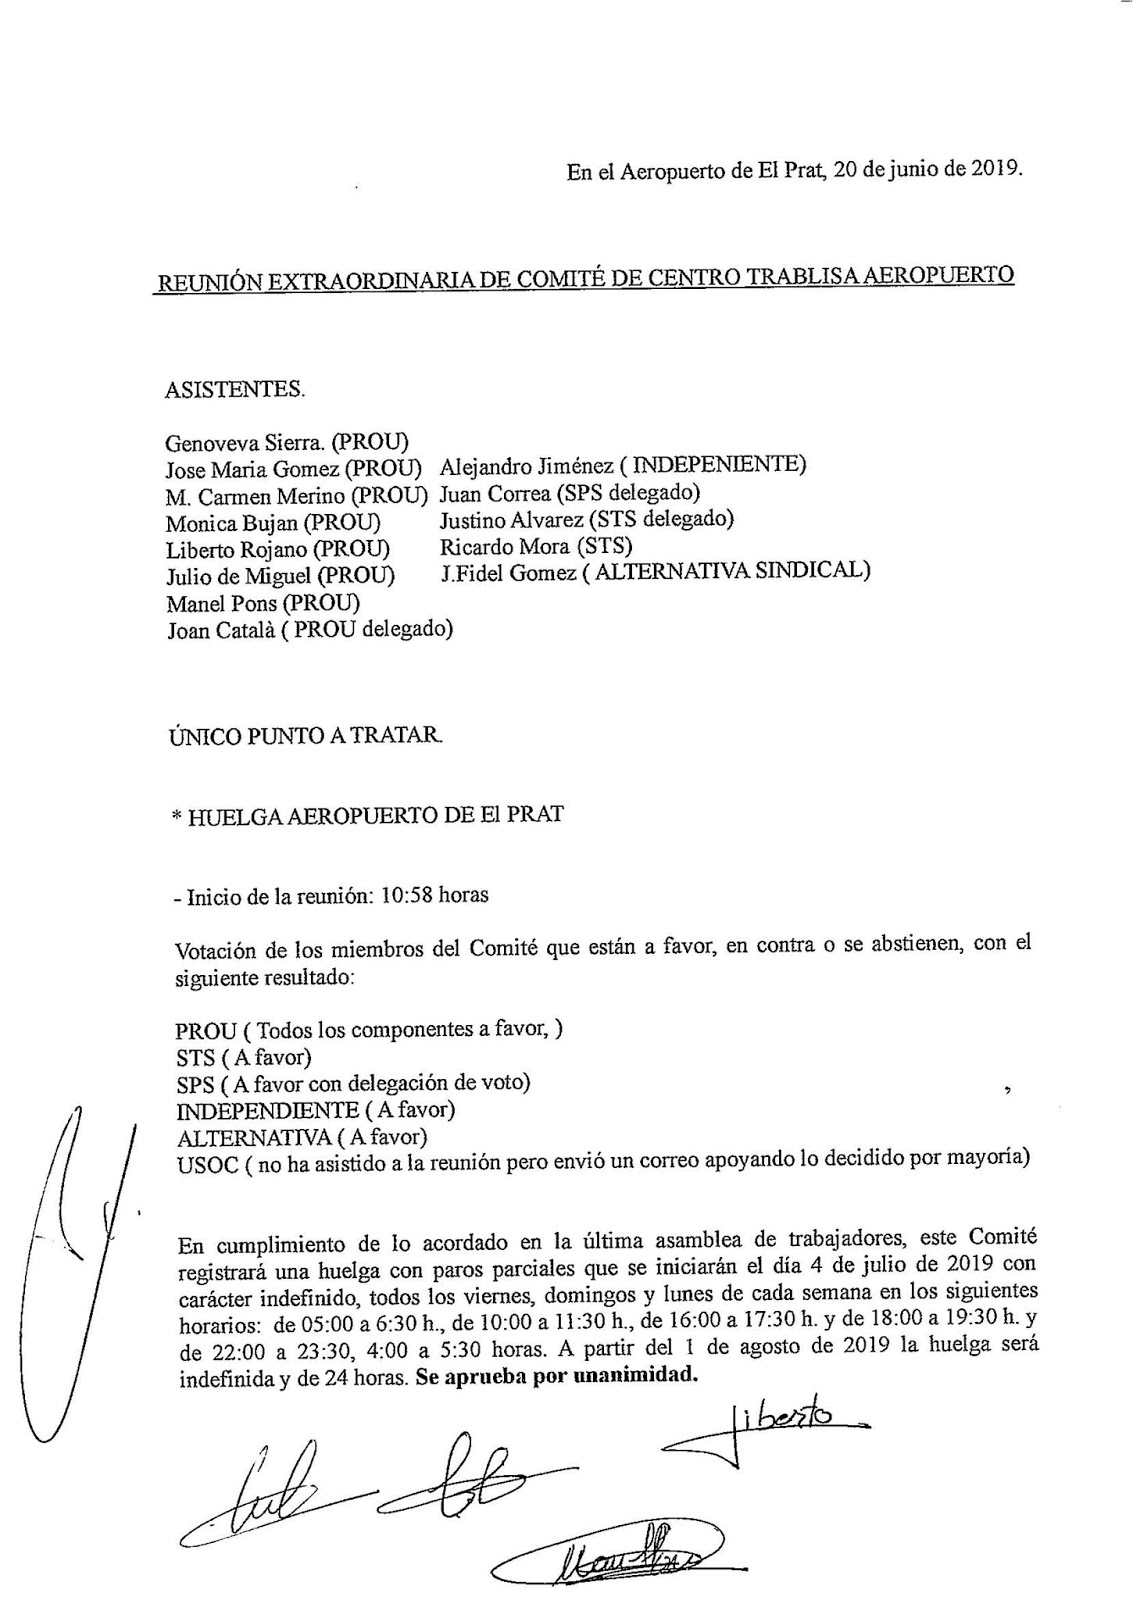 (Ver actas) Convocada una huelga indefinida por parte del servicio de seguridad de El Prat